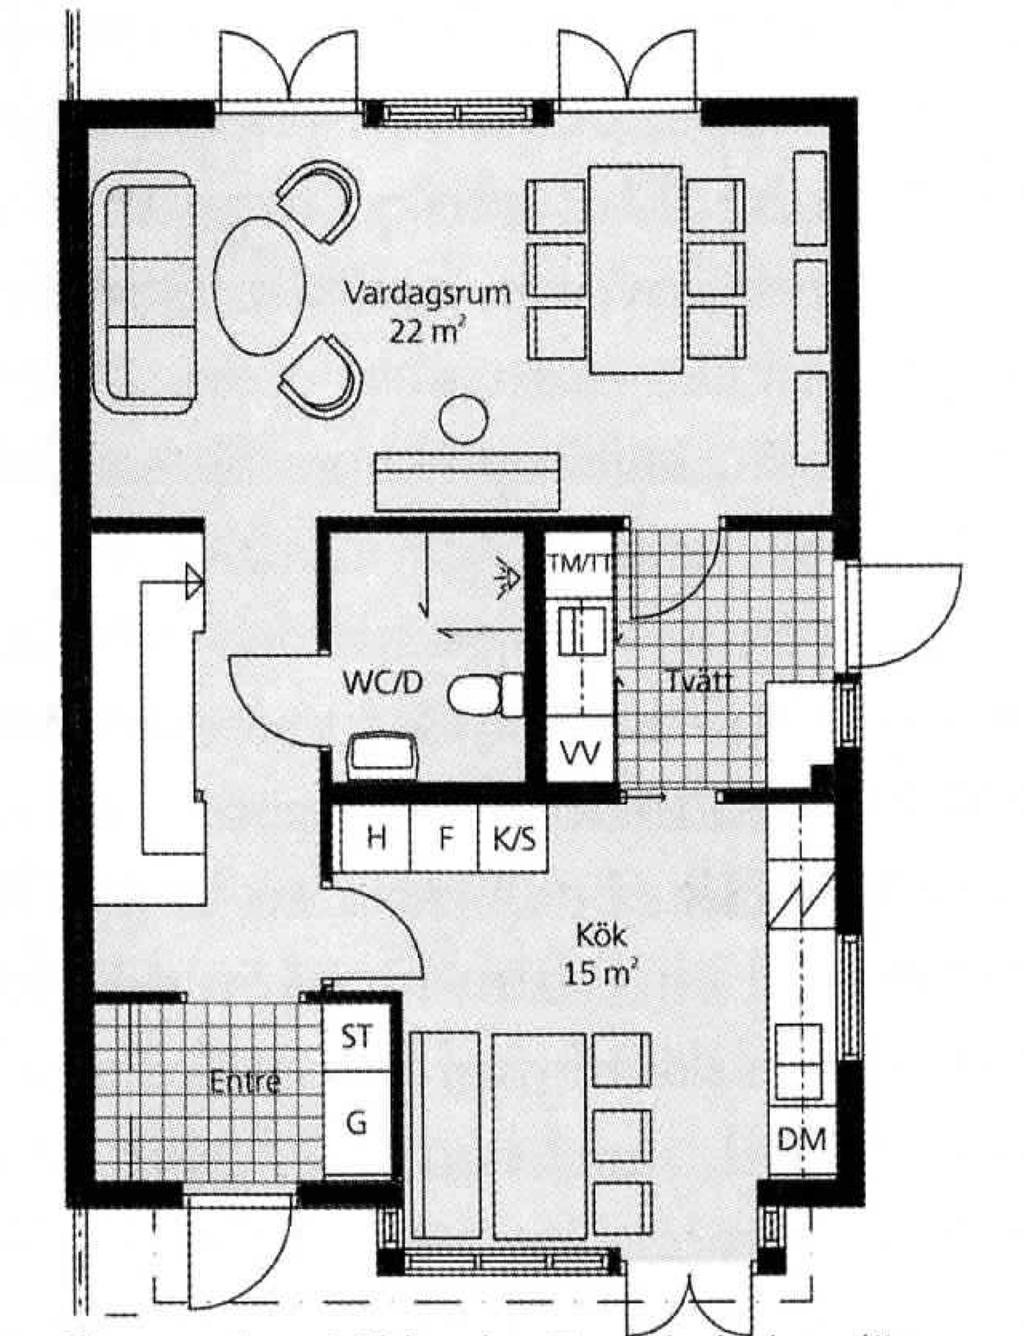 7 6 5 4 3 2 1 Karlstads universitet 9(11) 19. Nedanstående planritning visar också en relativt modern svensk lägenhetsplan som också har släktskap med lite äldre plantyper.